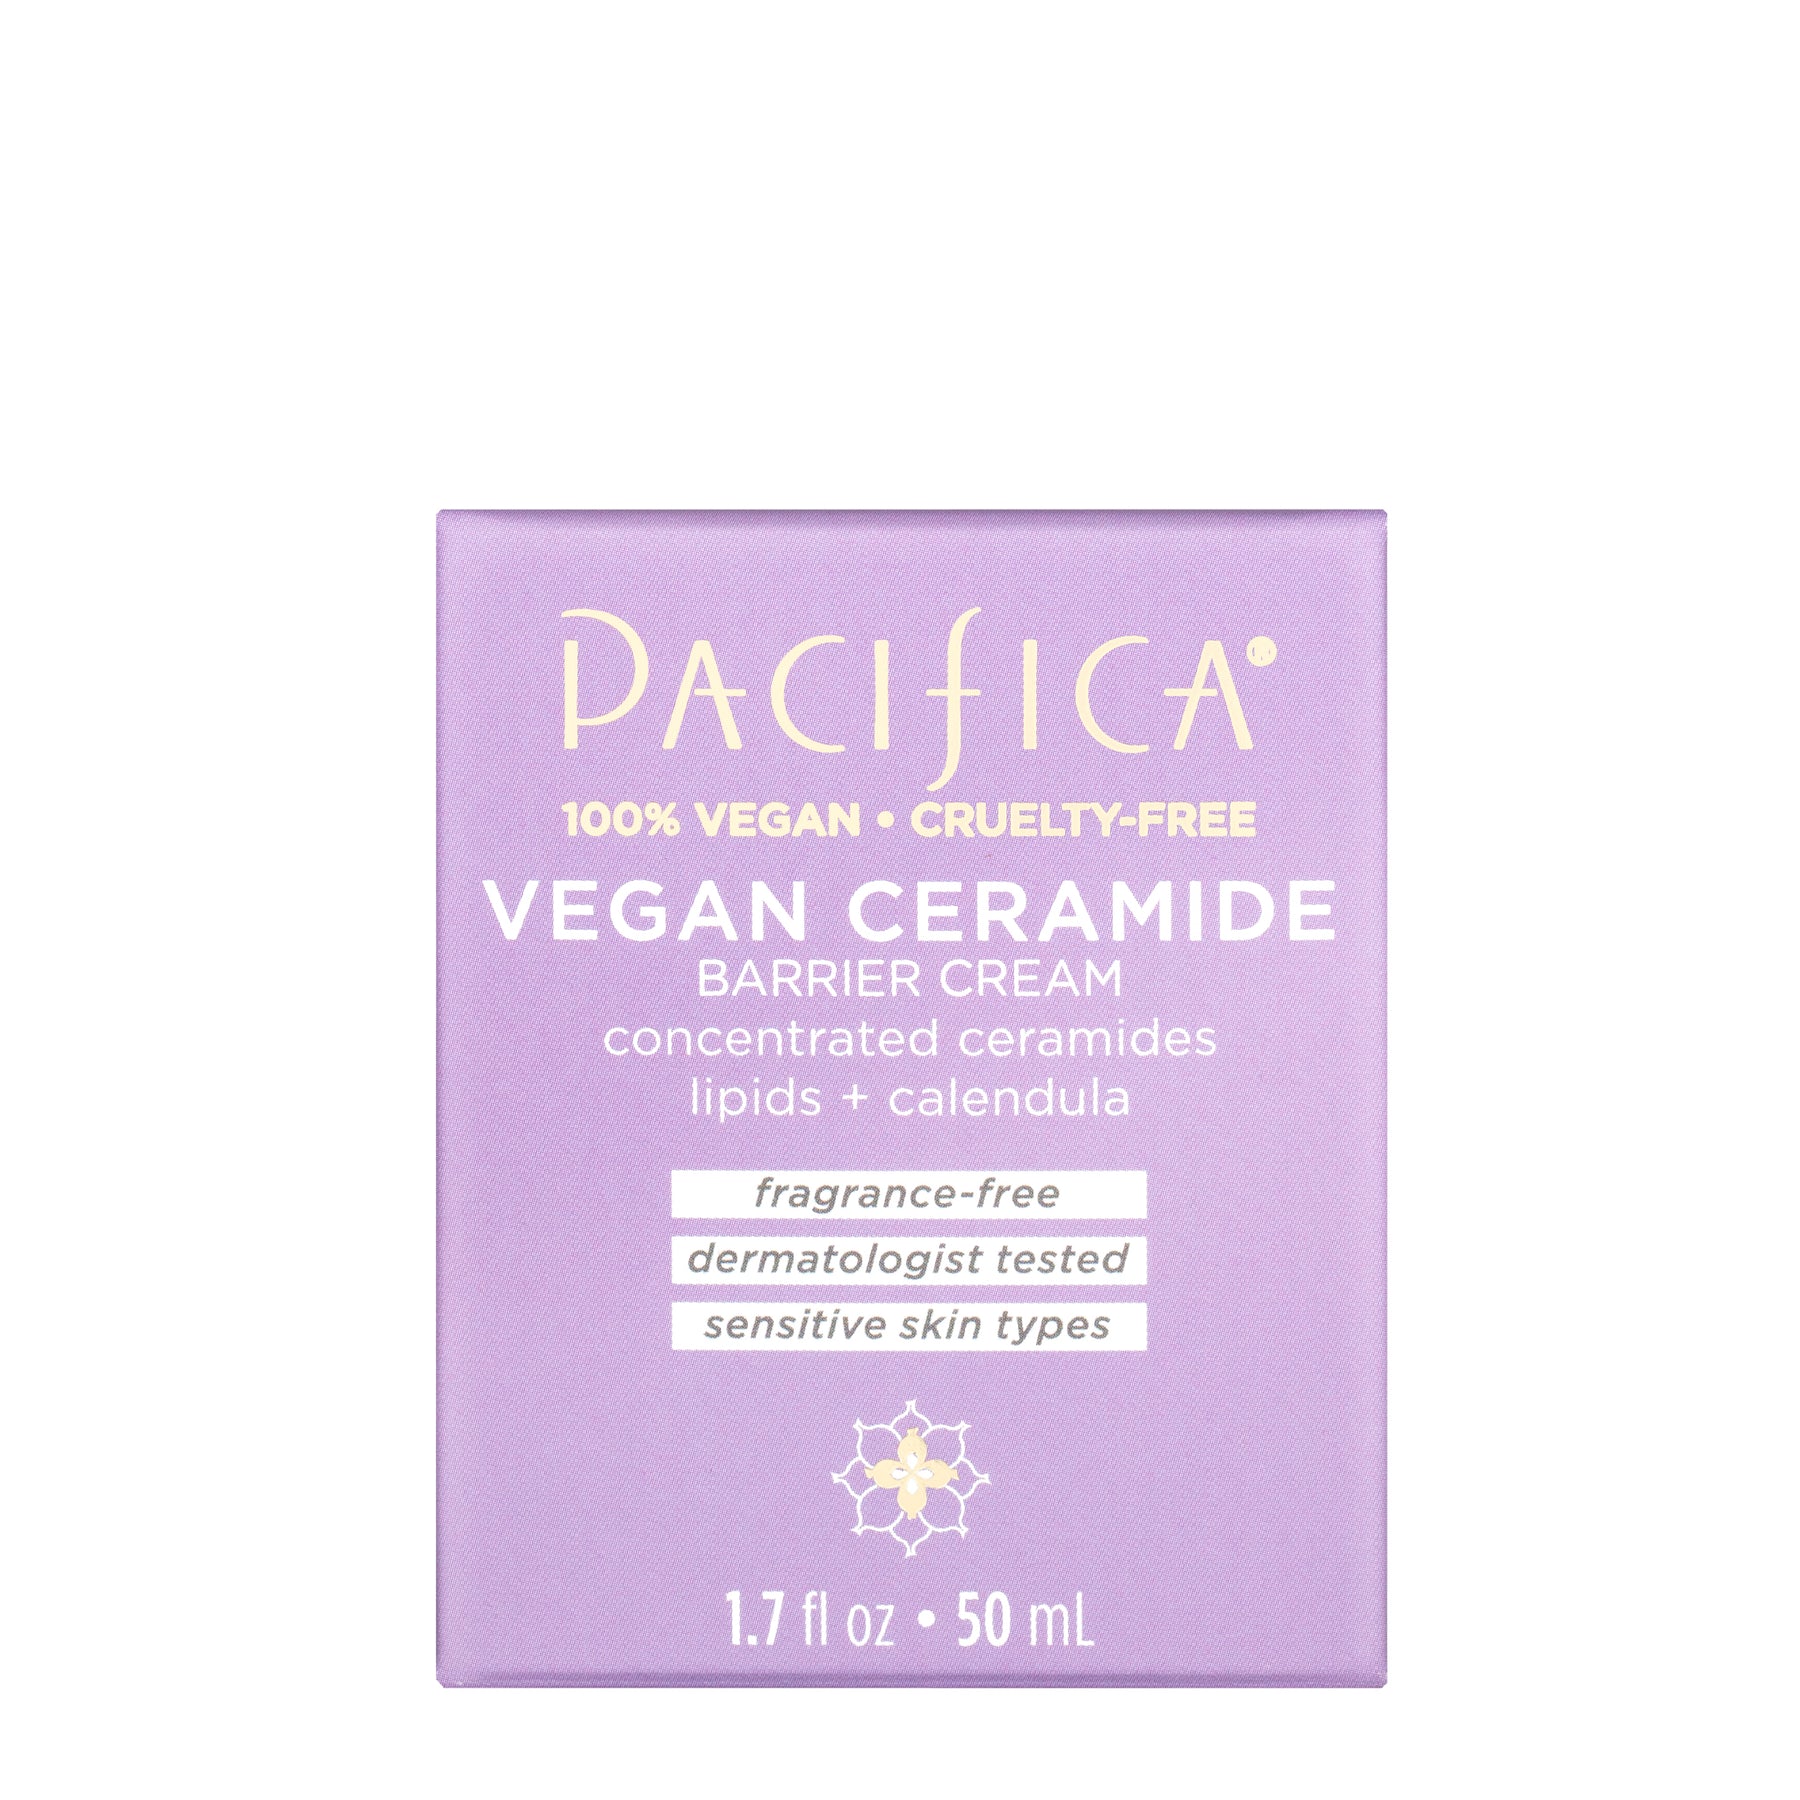 Vegan Ceramide Barrier Face Cream - Skin Care - Pacifica Beauty